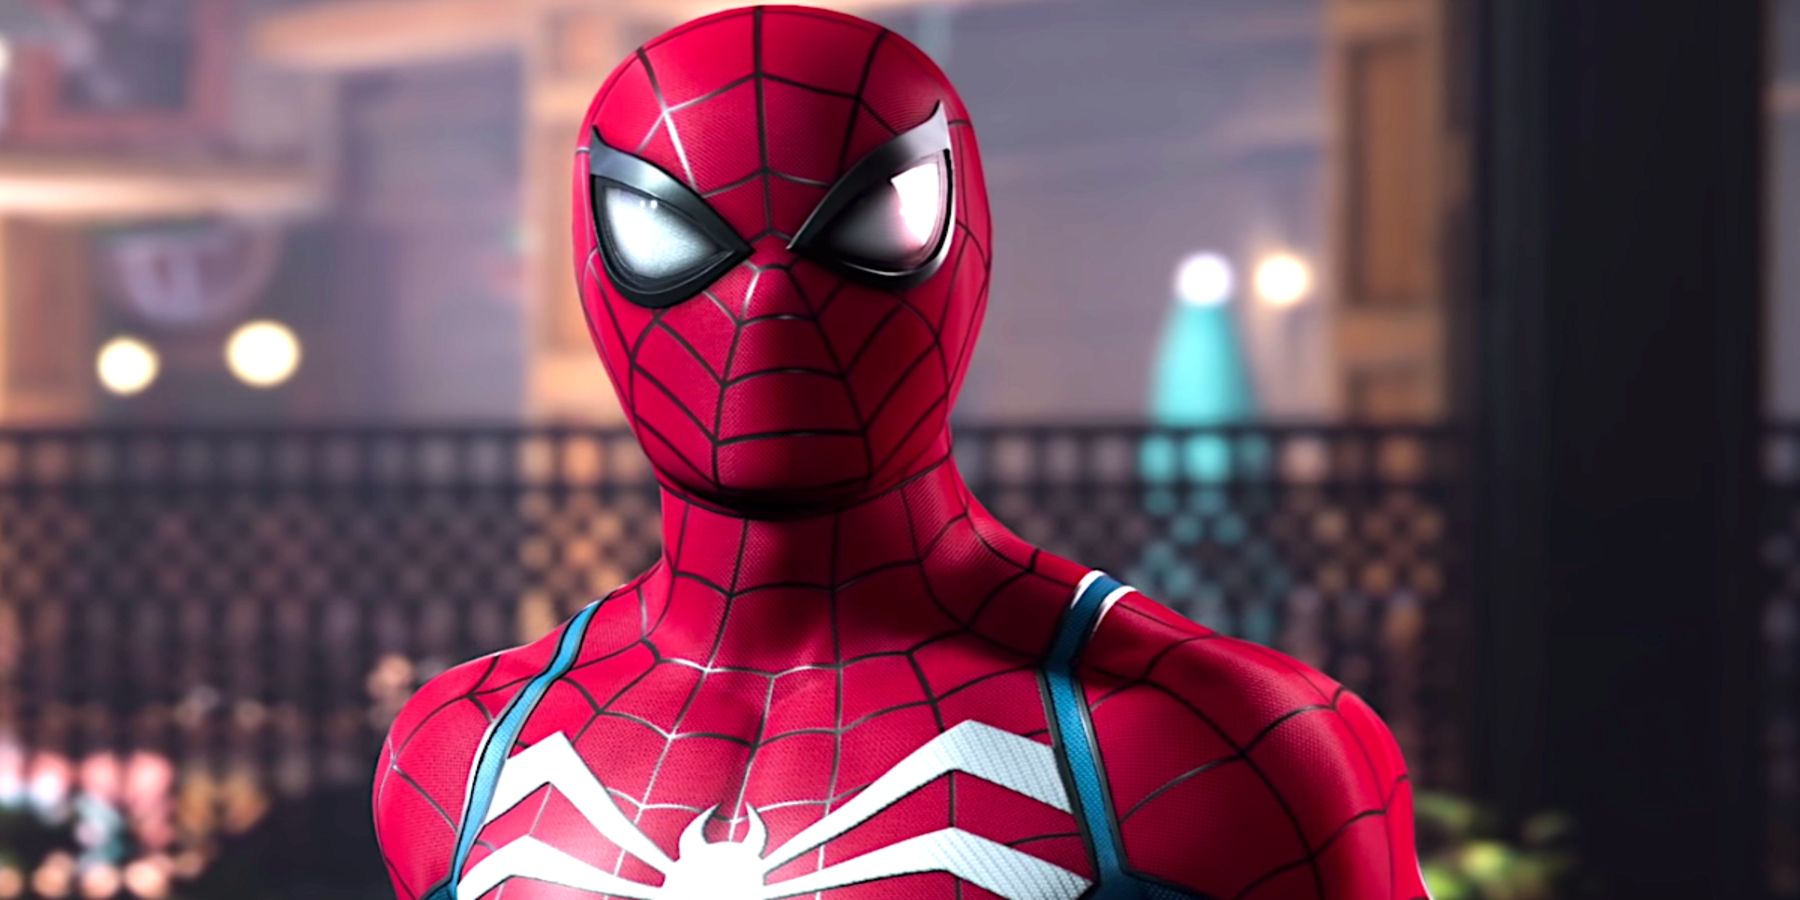 Komik Video, Marvel’s Spider-Man 2 Fragmanına Bully Maguire Ekliyor